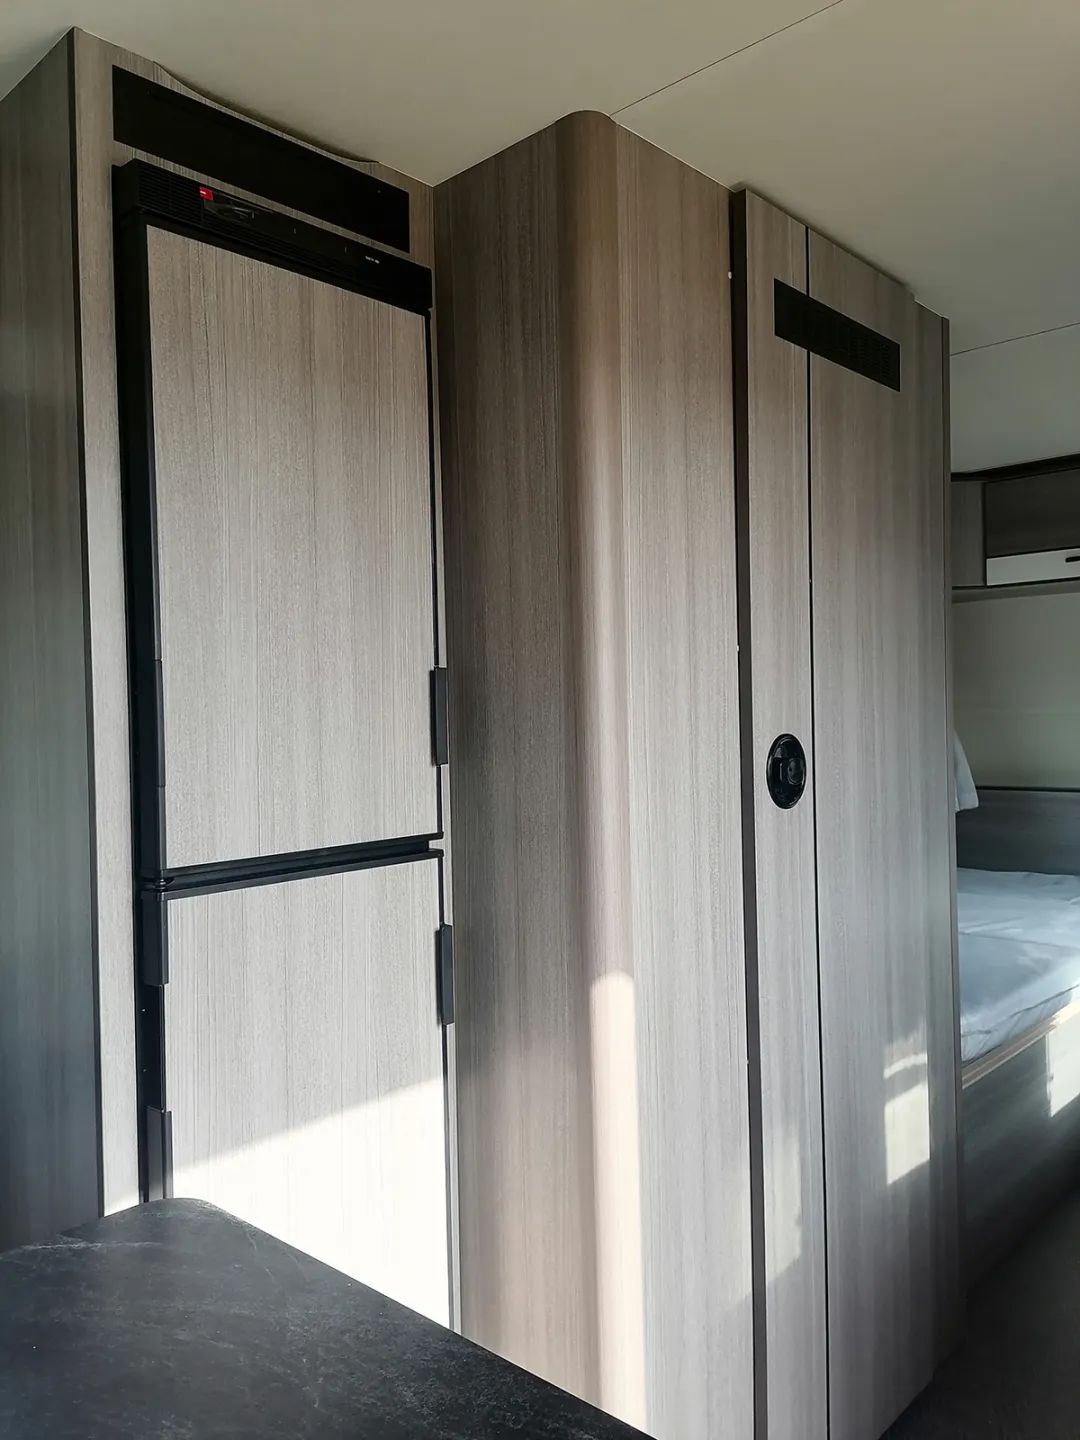 宇通T512拖挂纵置床/双单床布局房车 | 超大存储、舒适旅居